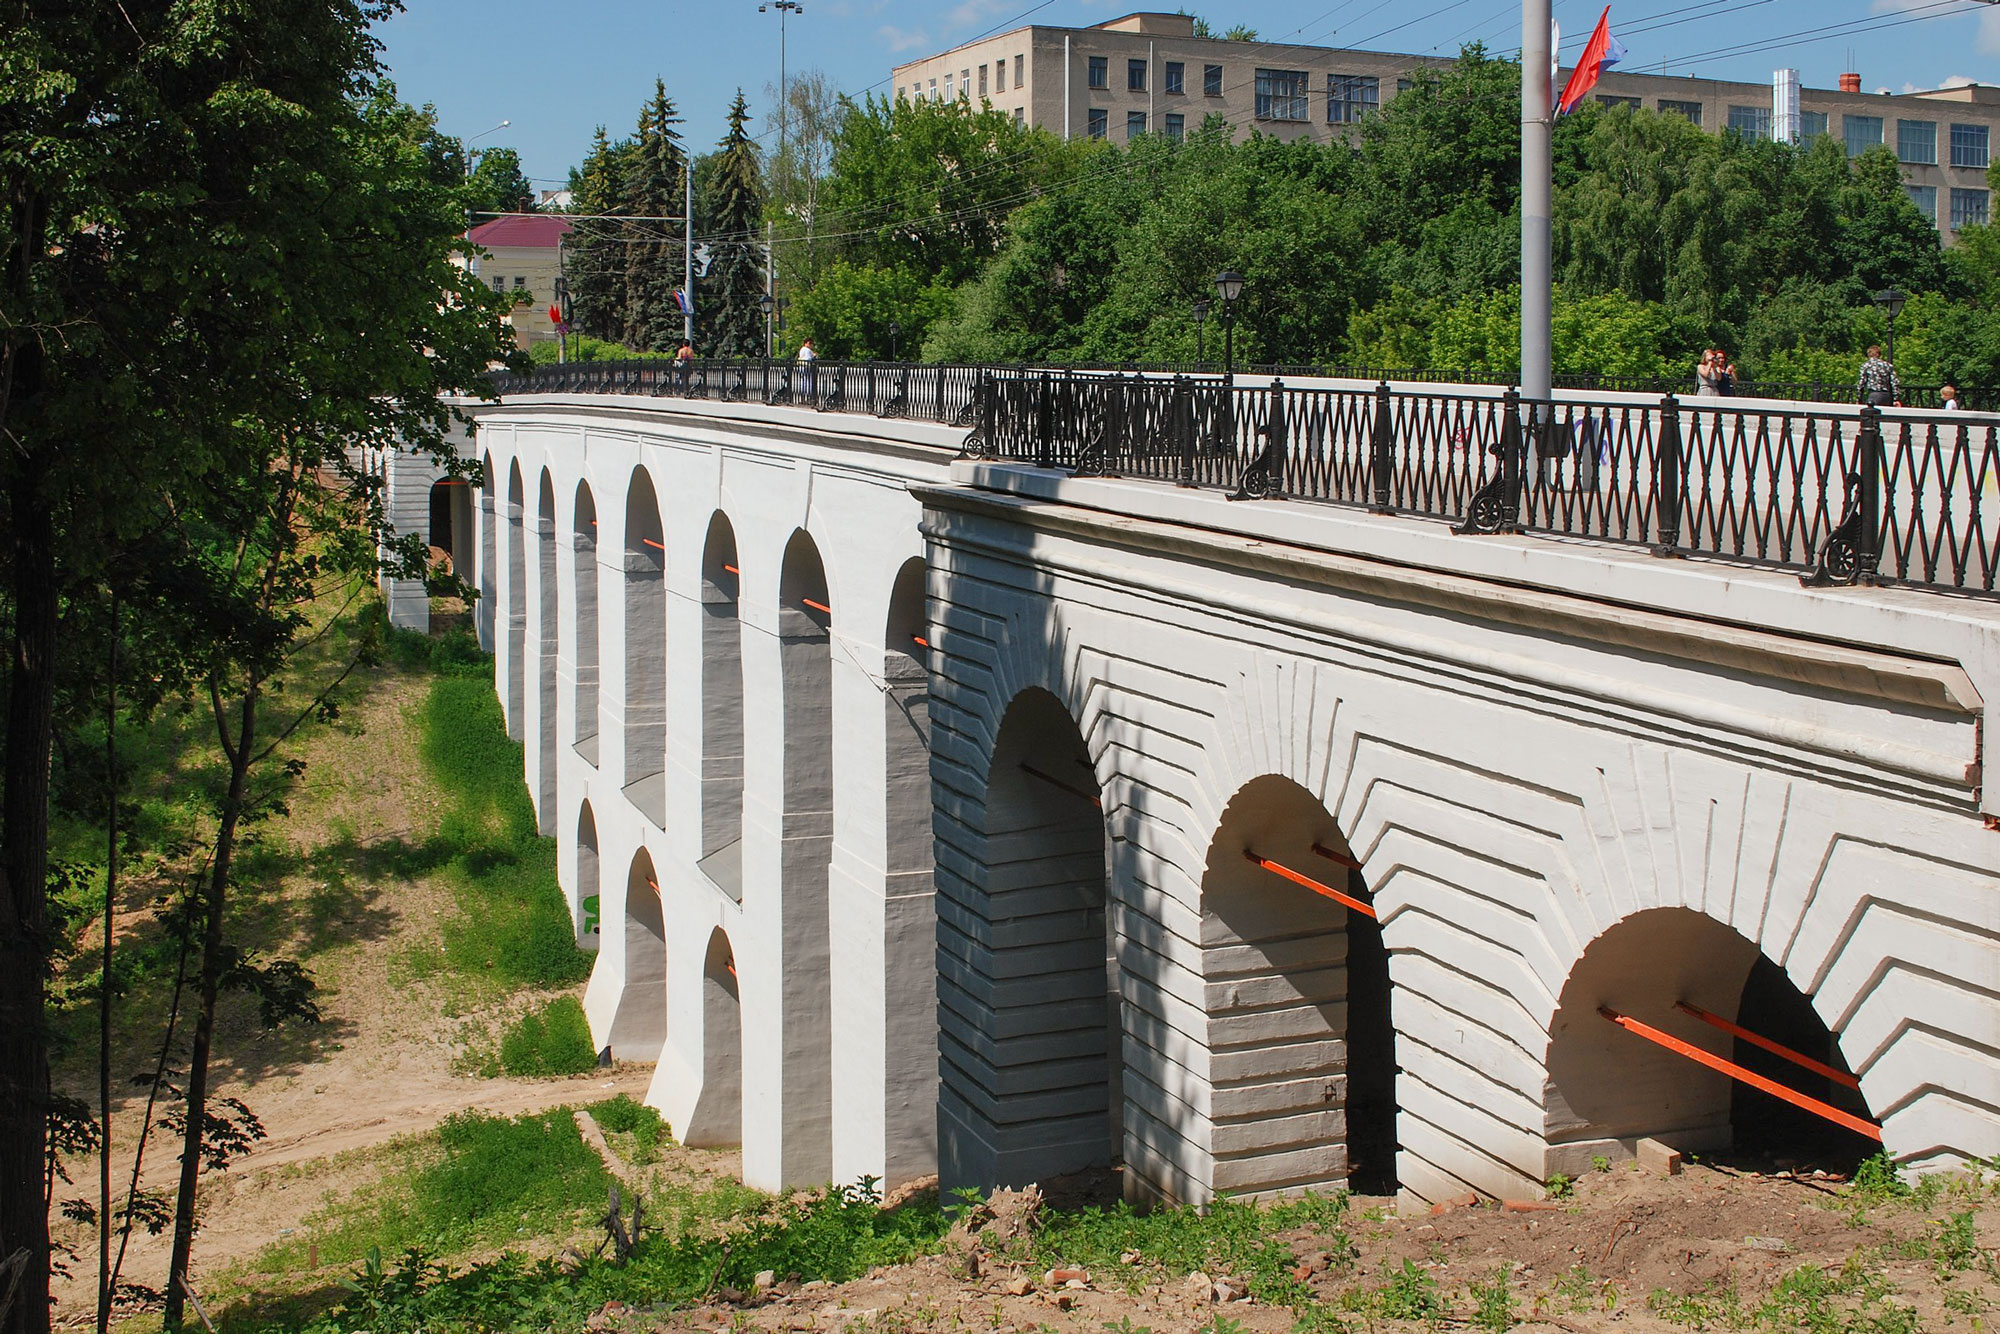 Местные власти собираются обустроить территорию под мостом, но пока это только планы на бумаге. Фото: Сержант Пеппер / Wikimedia Commons